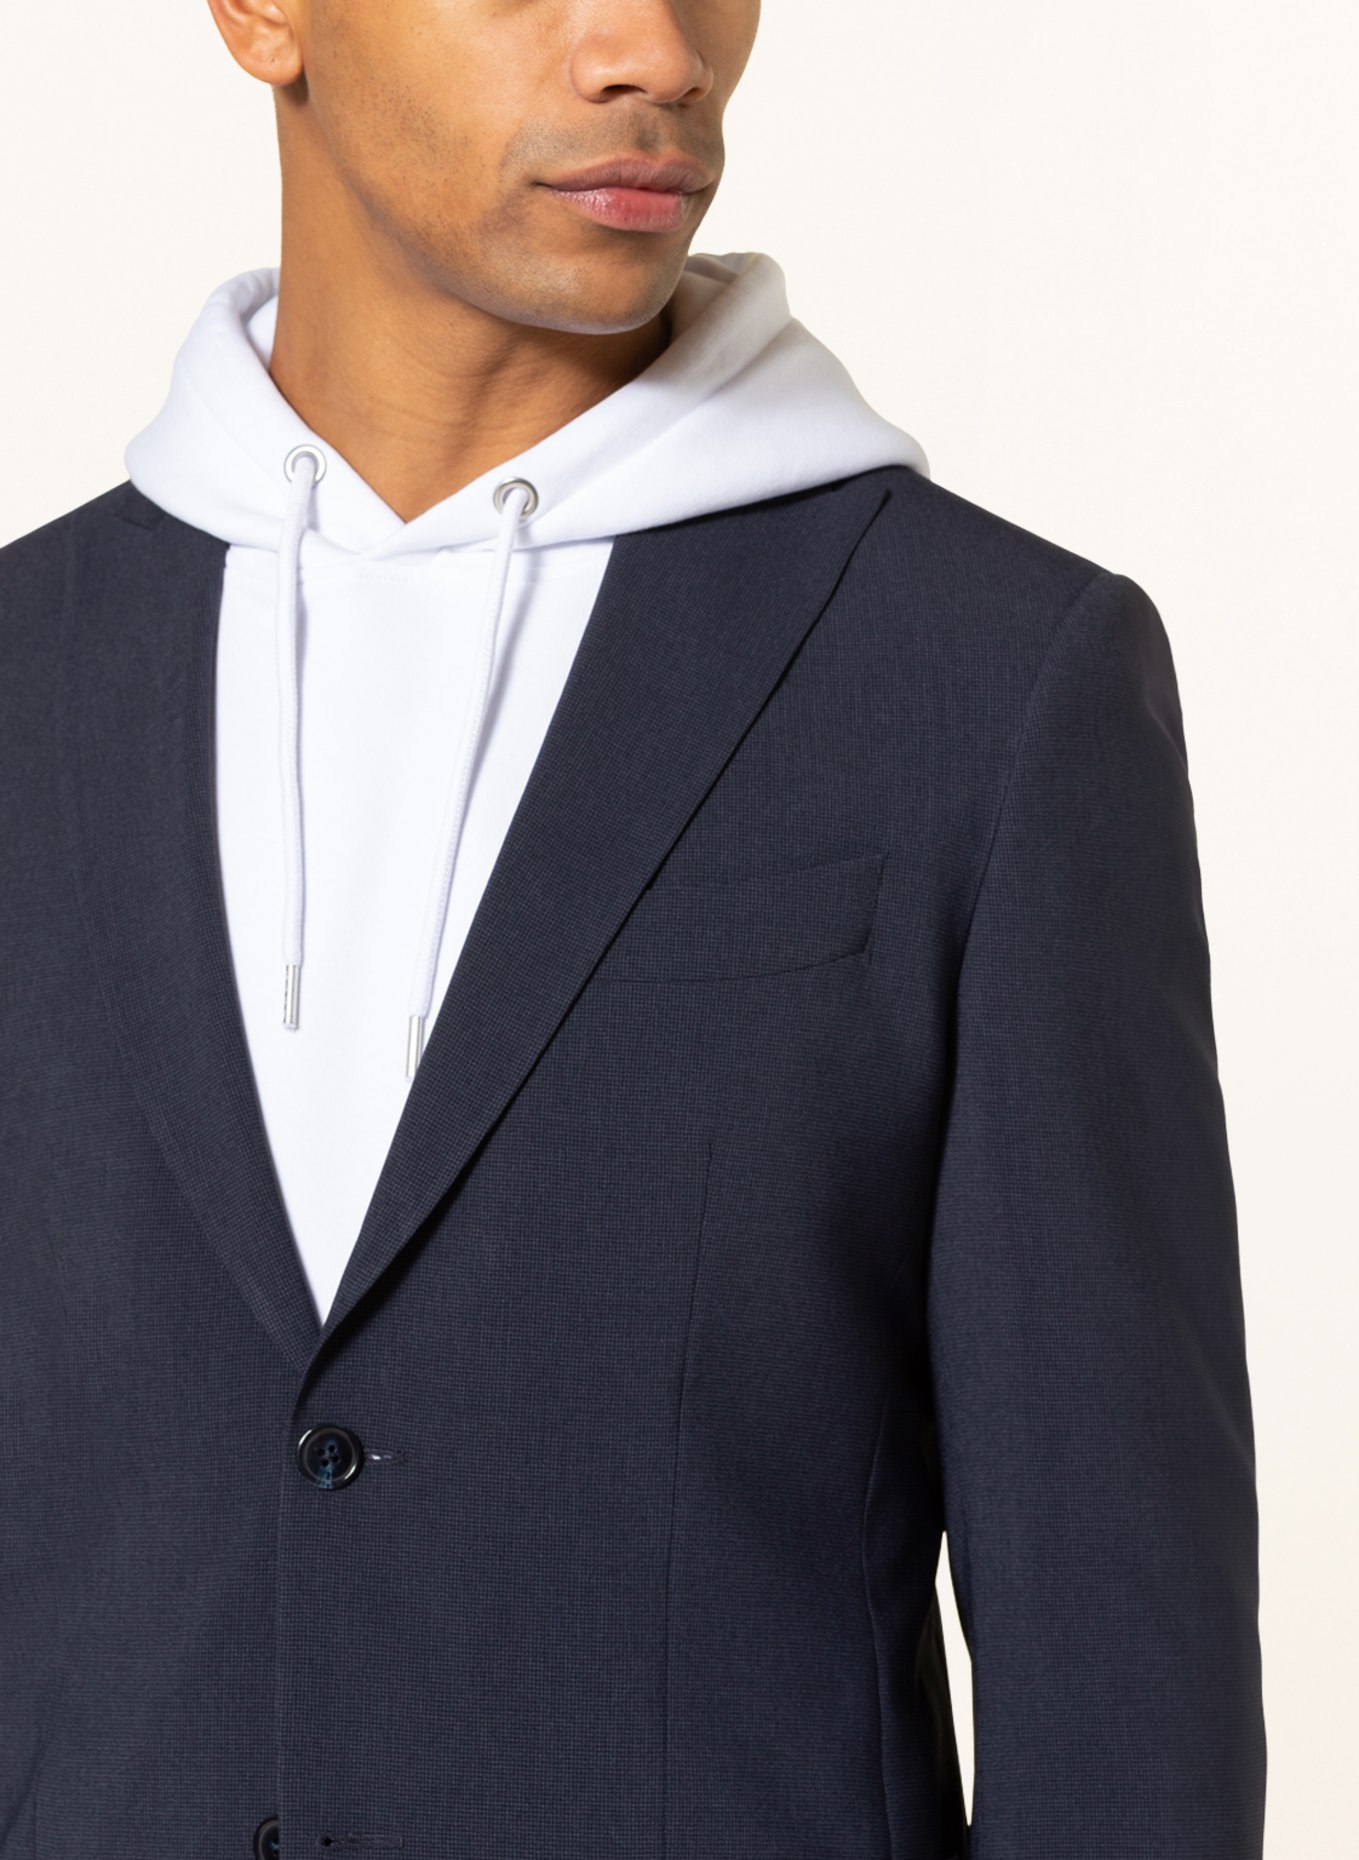 SPSR Suit jacket extra slim fit , Color: 53C3009 Houndstooth Blue (Image 6)